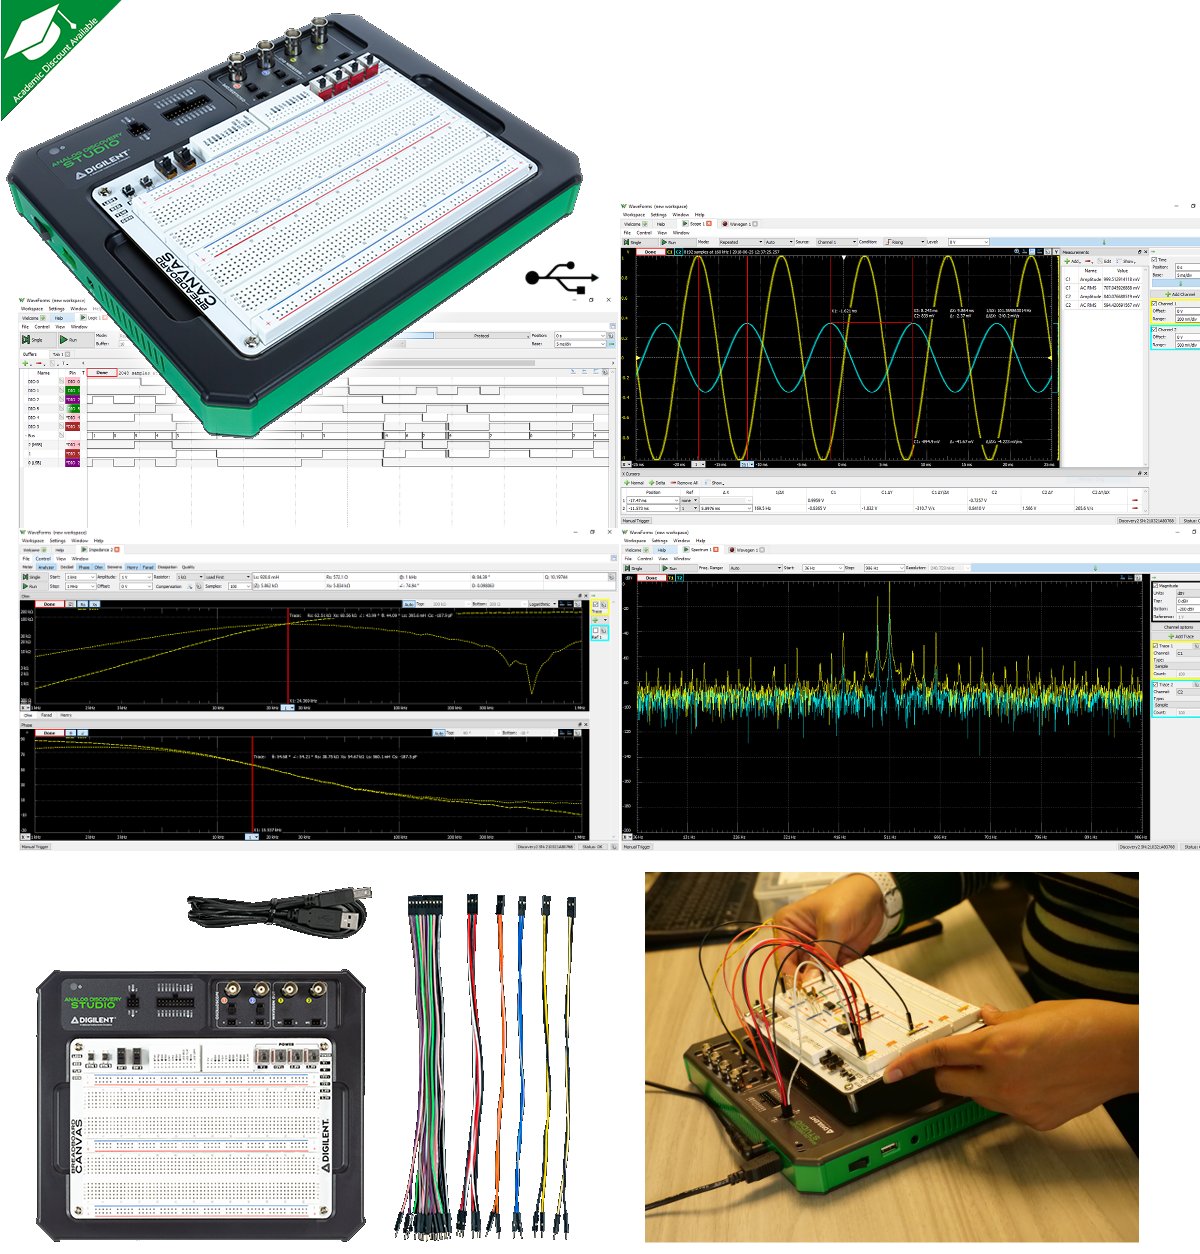 Laboratorio eléctrónico portátil, c/protoboard, osciloscopio, generador de señales, analizador lógico, de espectros, etc Analog Discovery Studio